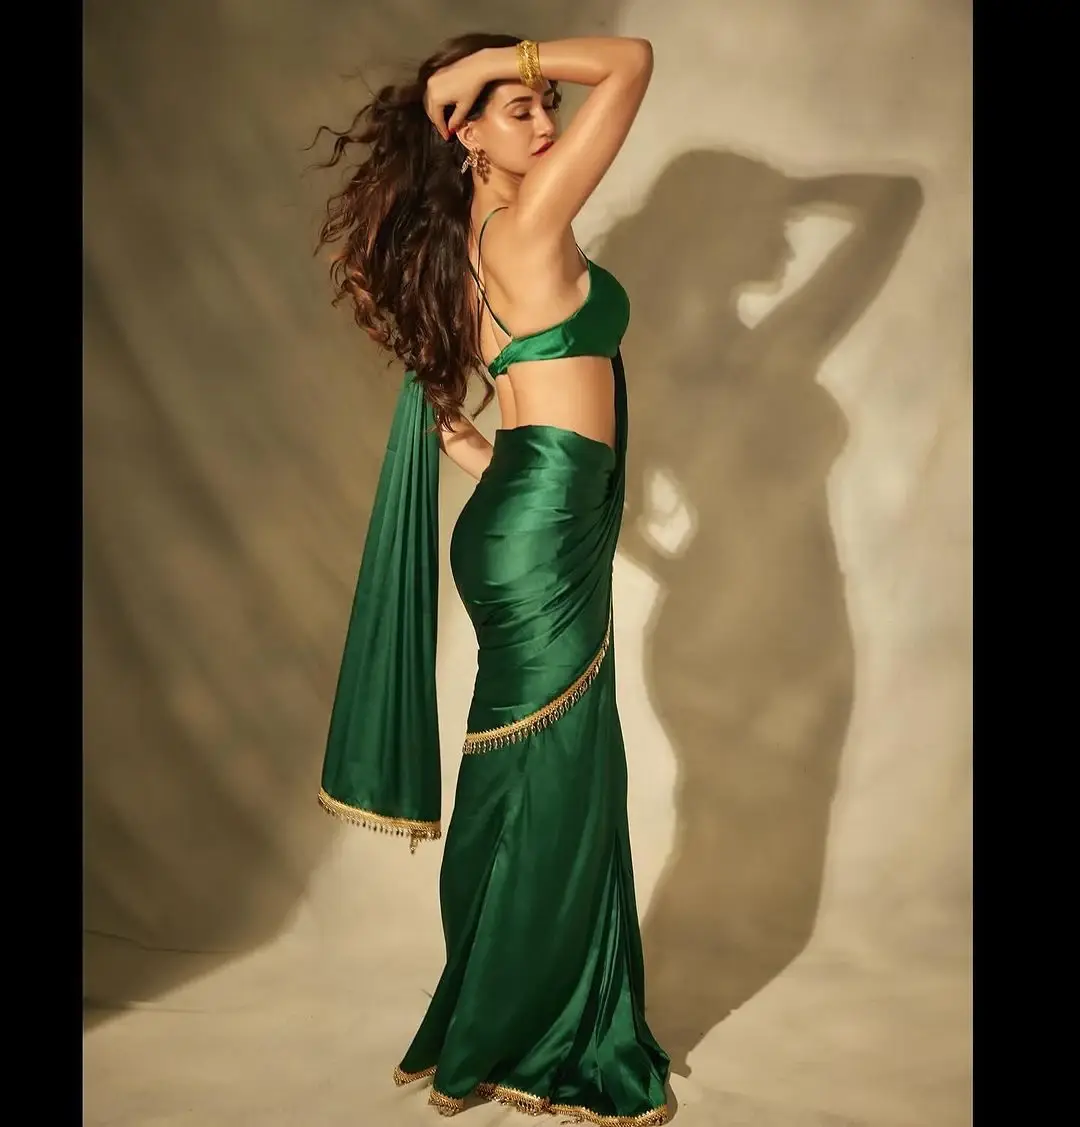 BEAUTIFUL INDIAN ACTRESS DISHA PATANI IN GREEN SAREE